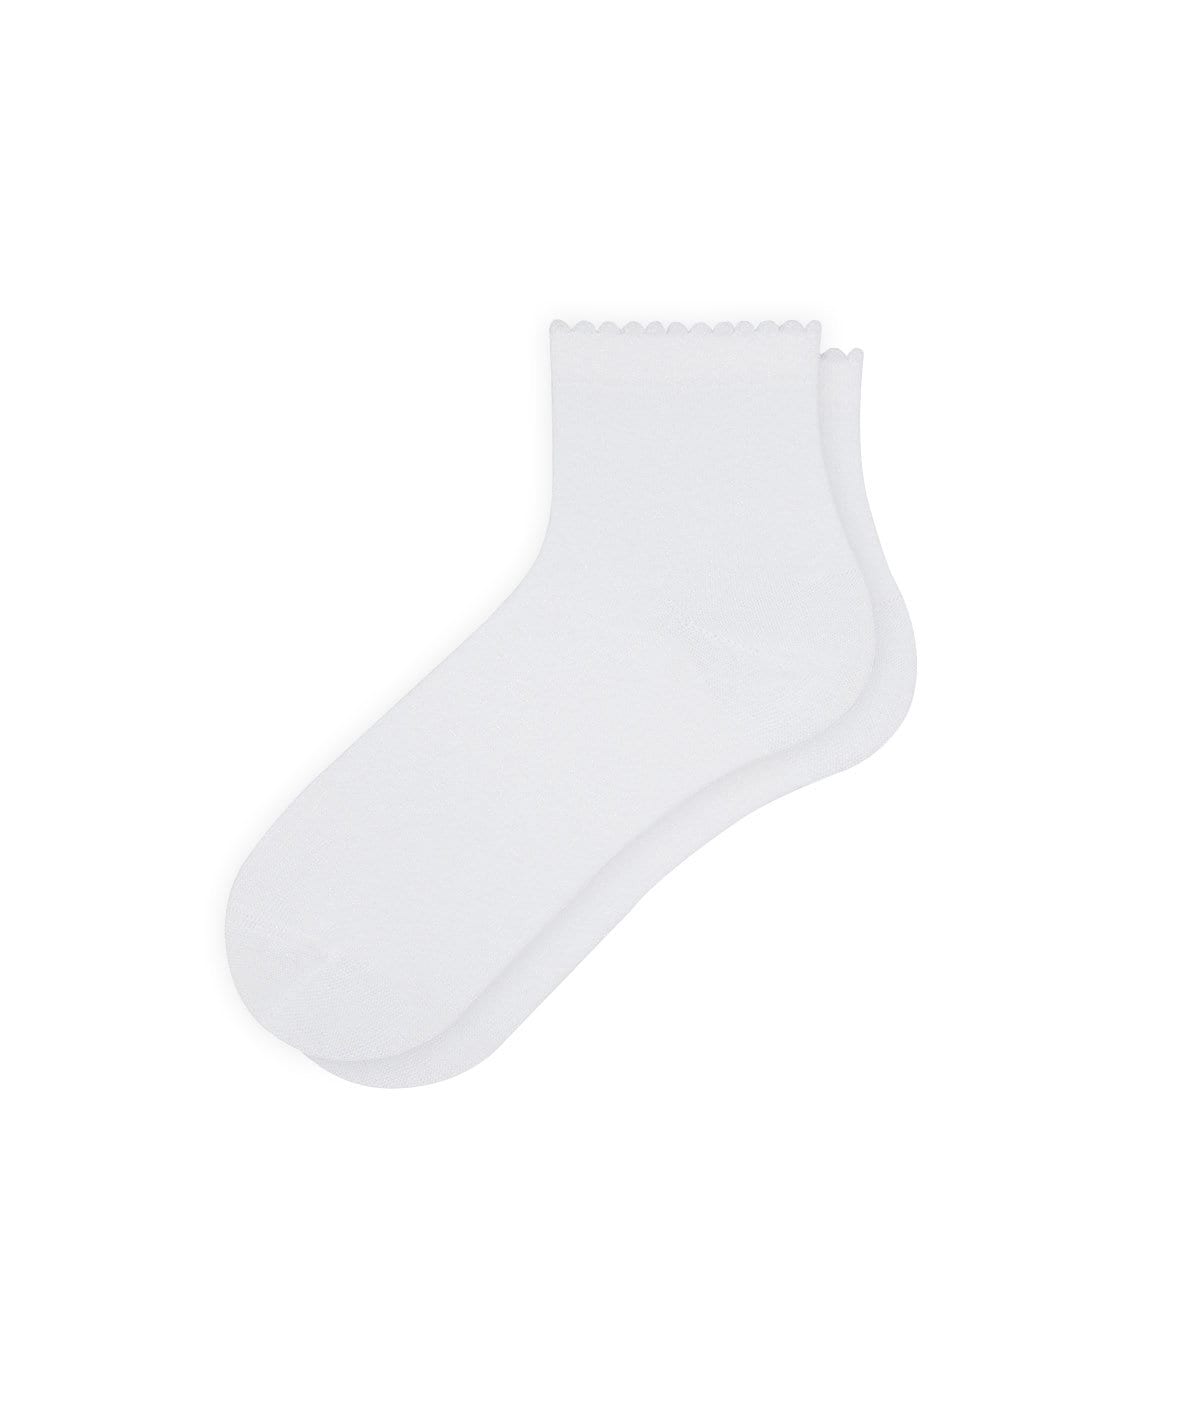 Women's White Ankle Low Socks, Socks For Sneaker, Lightweight Socks, Skating Socks, White Color Sparkle Hosiery, Socks for Sneaker, Loafer